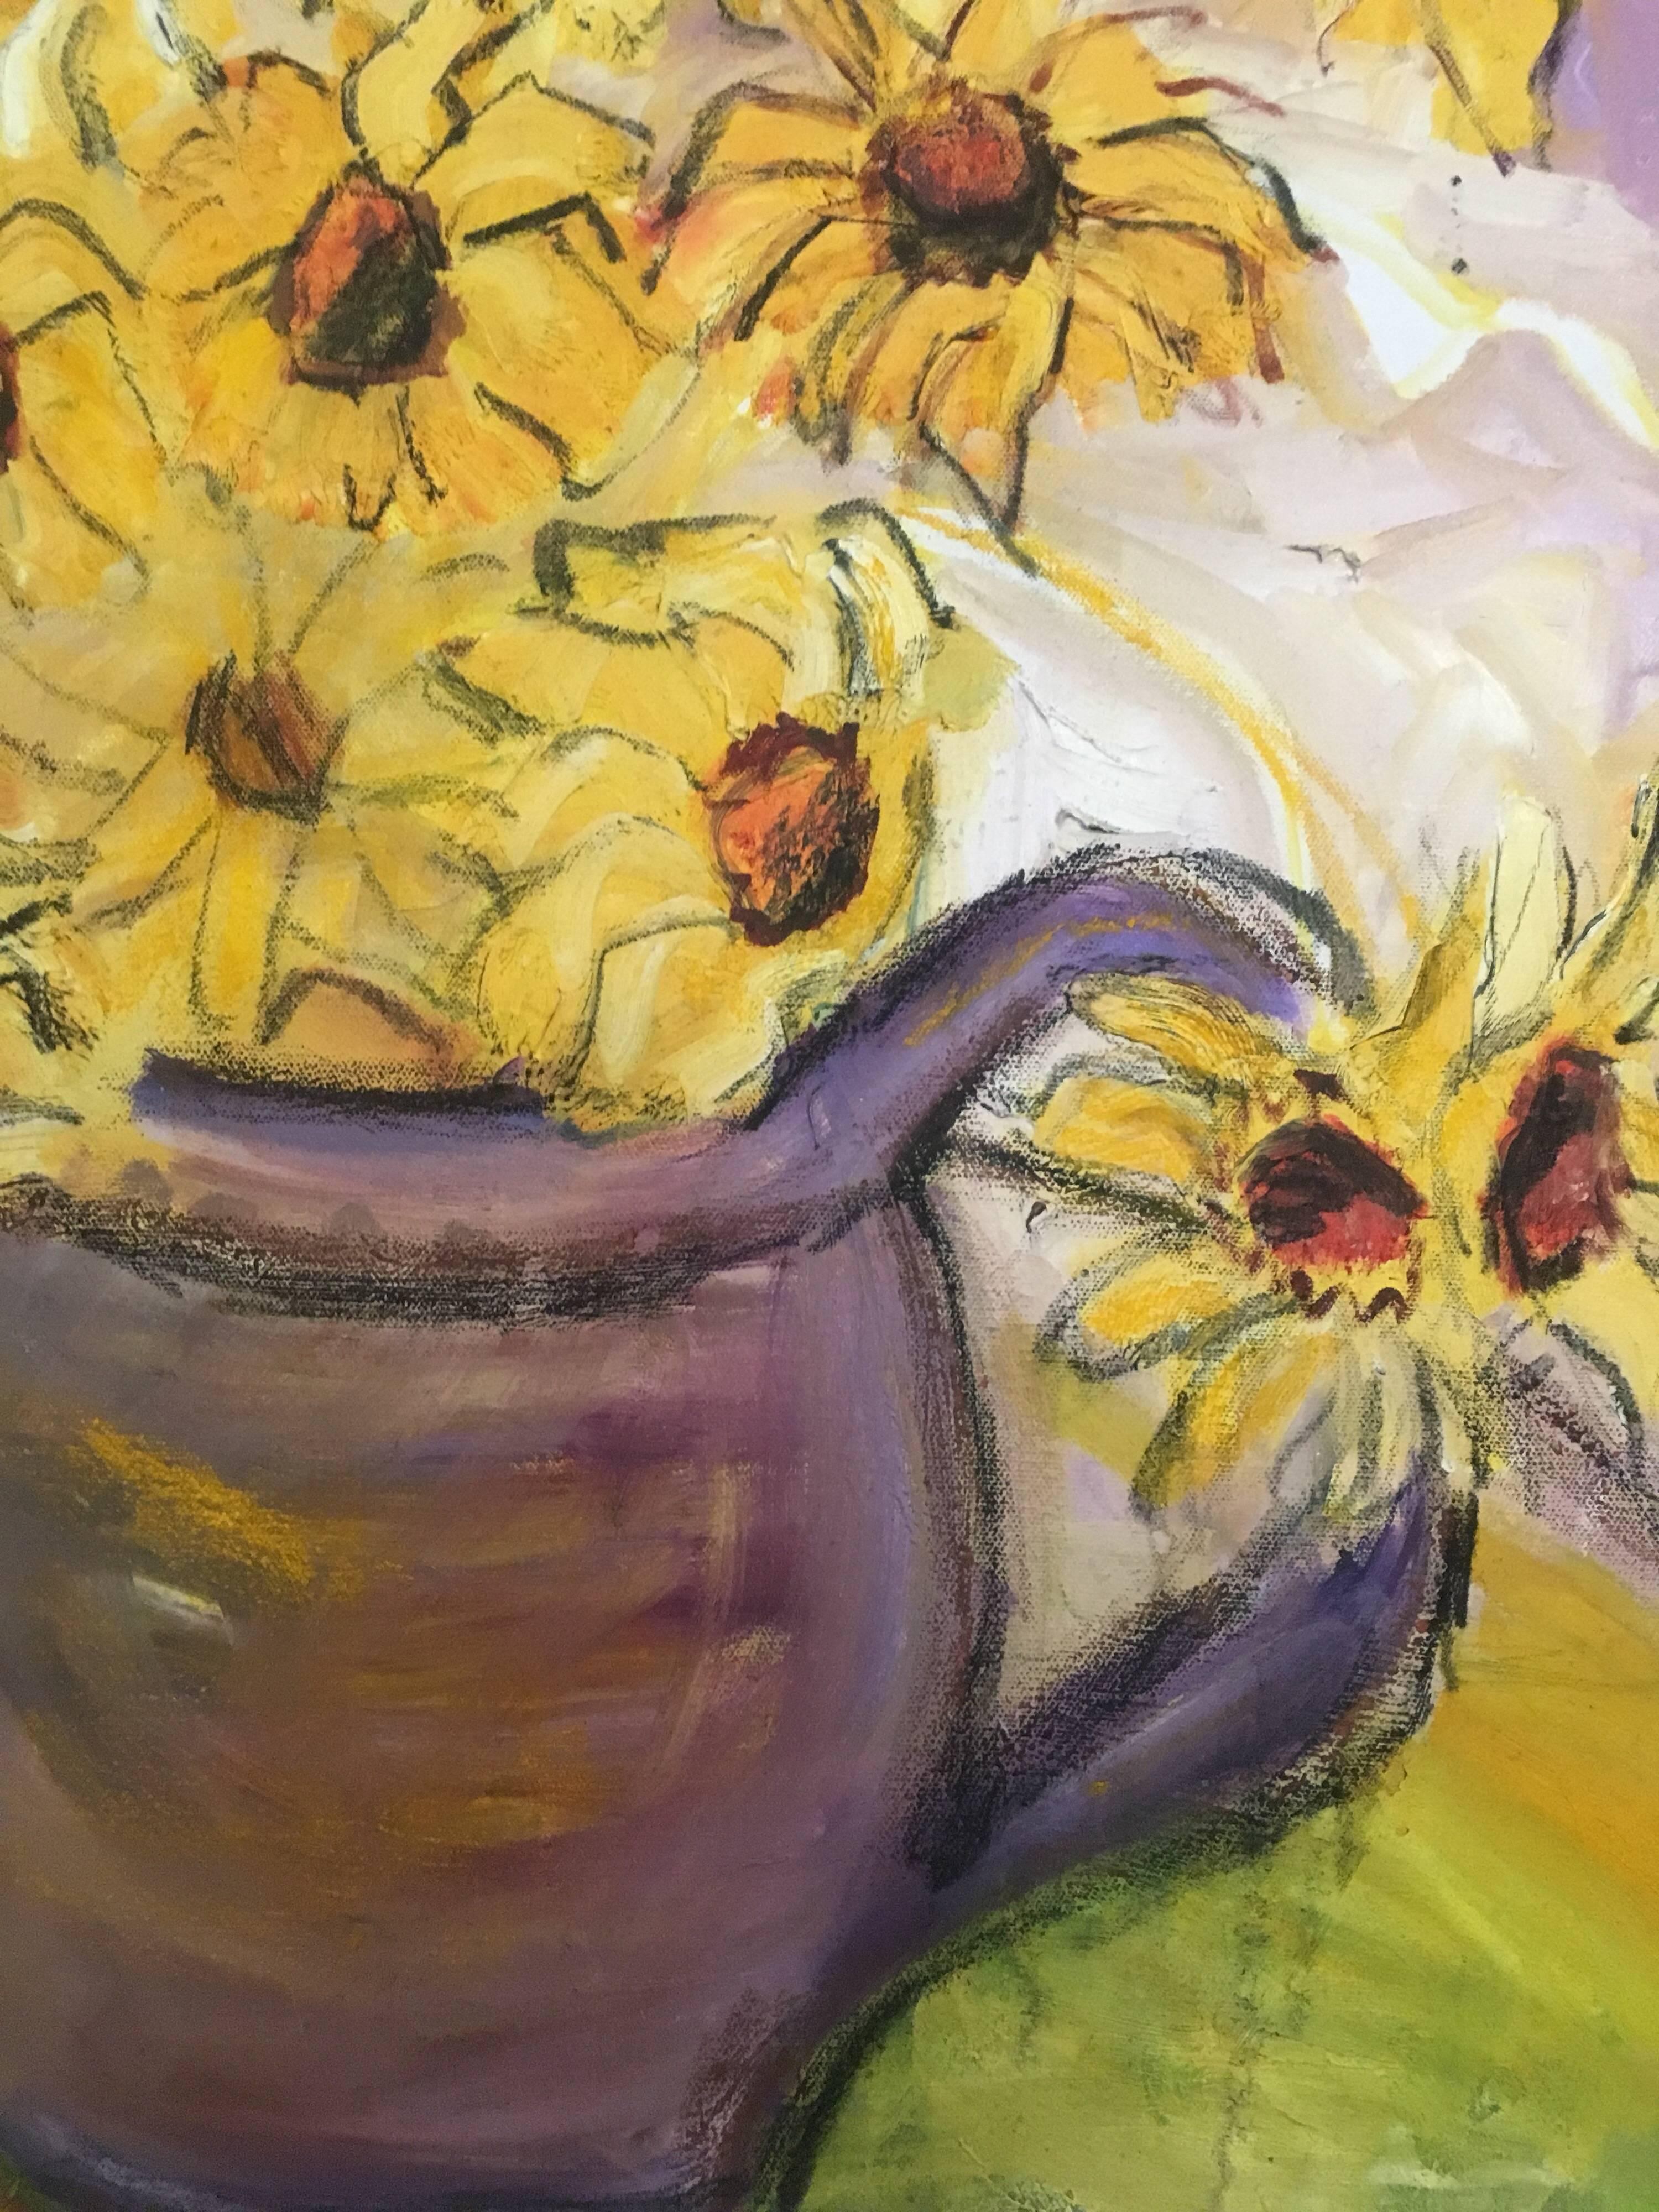 Gänseblümchen in einer lila Vase, Blumen Ölgemälde, britischer Künstler
von Pamela Cawley, Britin, 20. Jahrhundert
ölgemälde auf Leinwand, ungerahmt

leinwand: 20 x 24 Zoll 

Beeindruckendes originales impressionistisches Ölgemälde der britischen